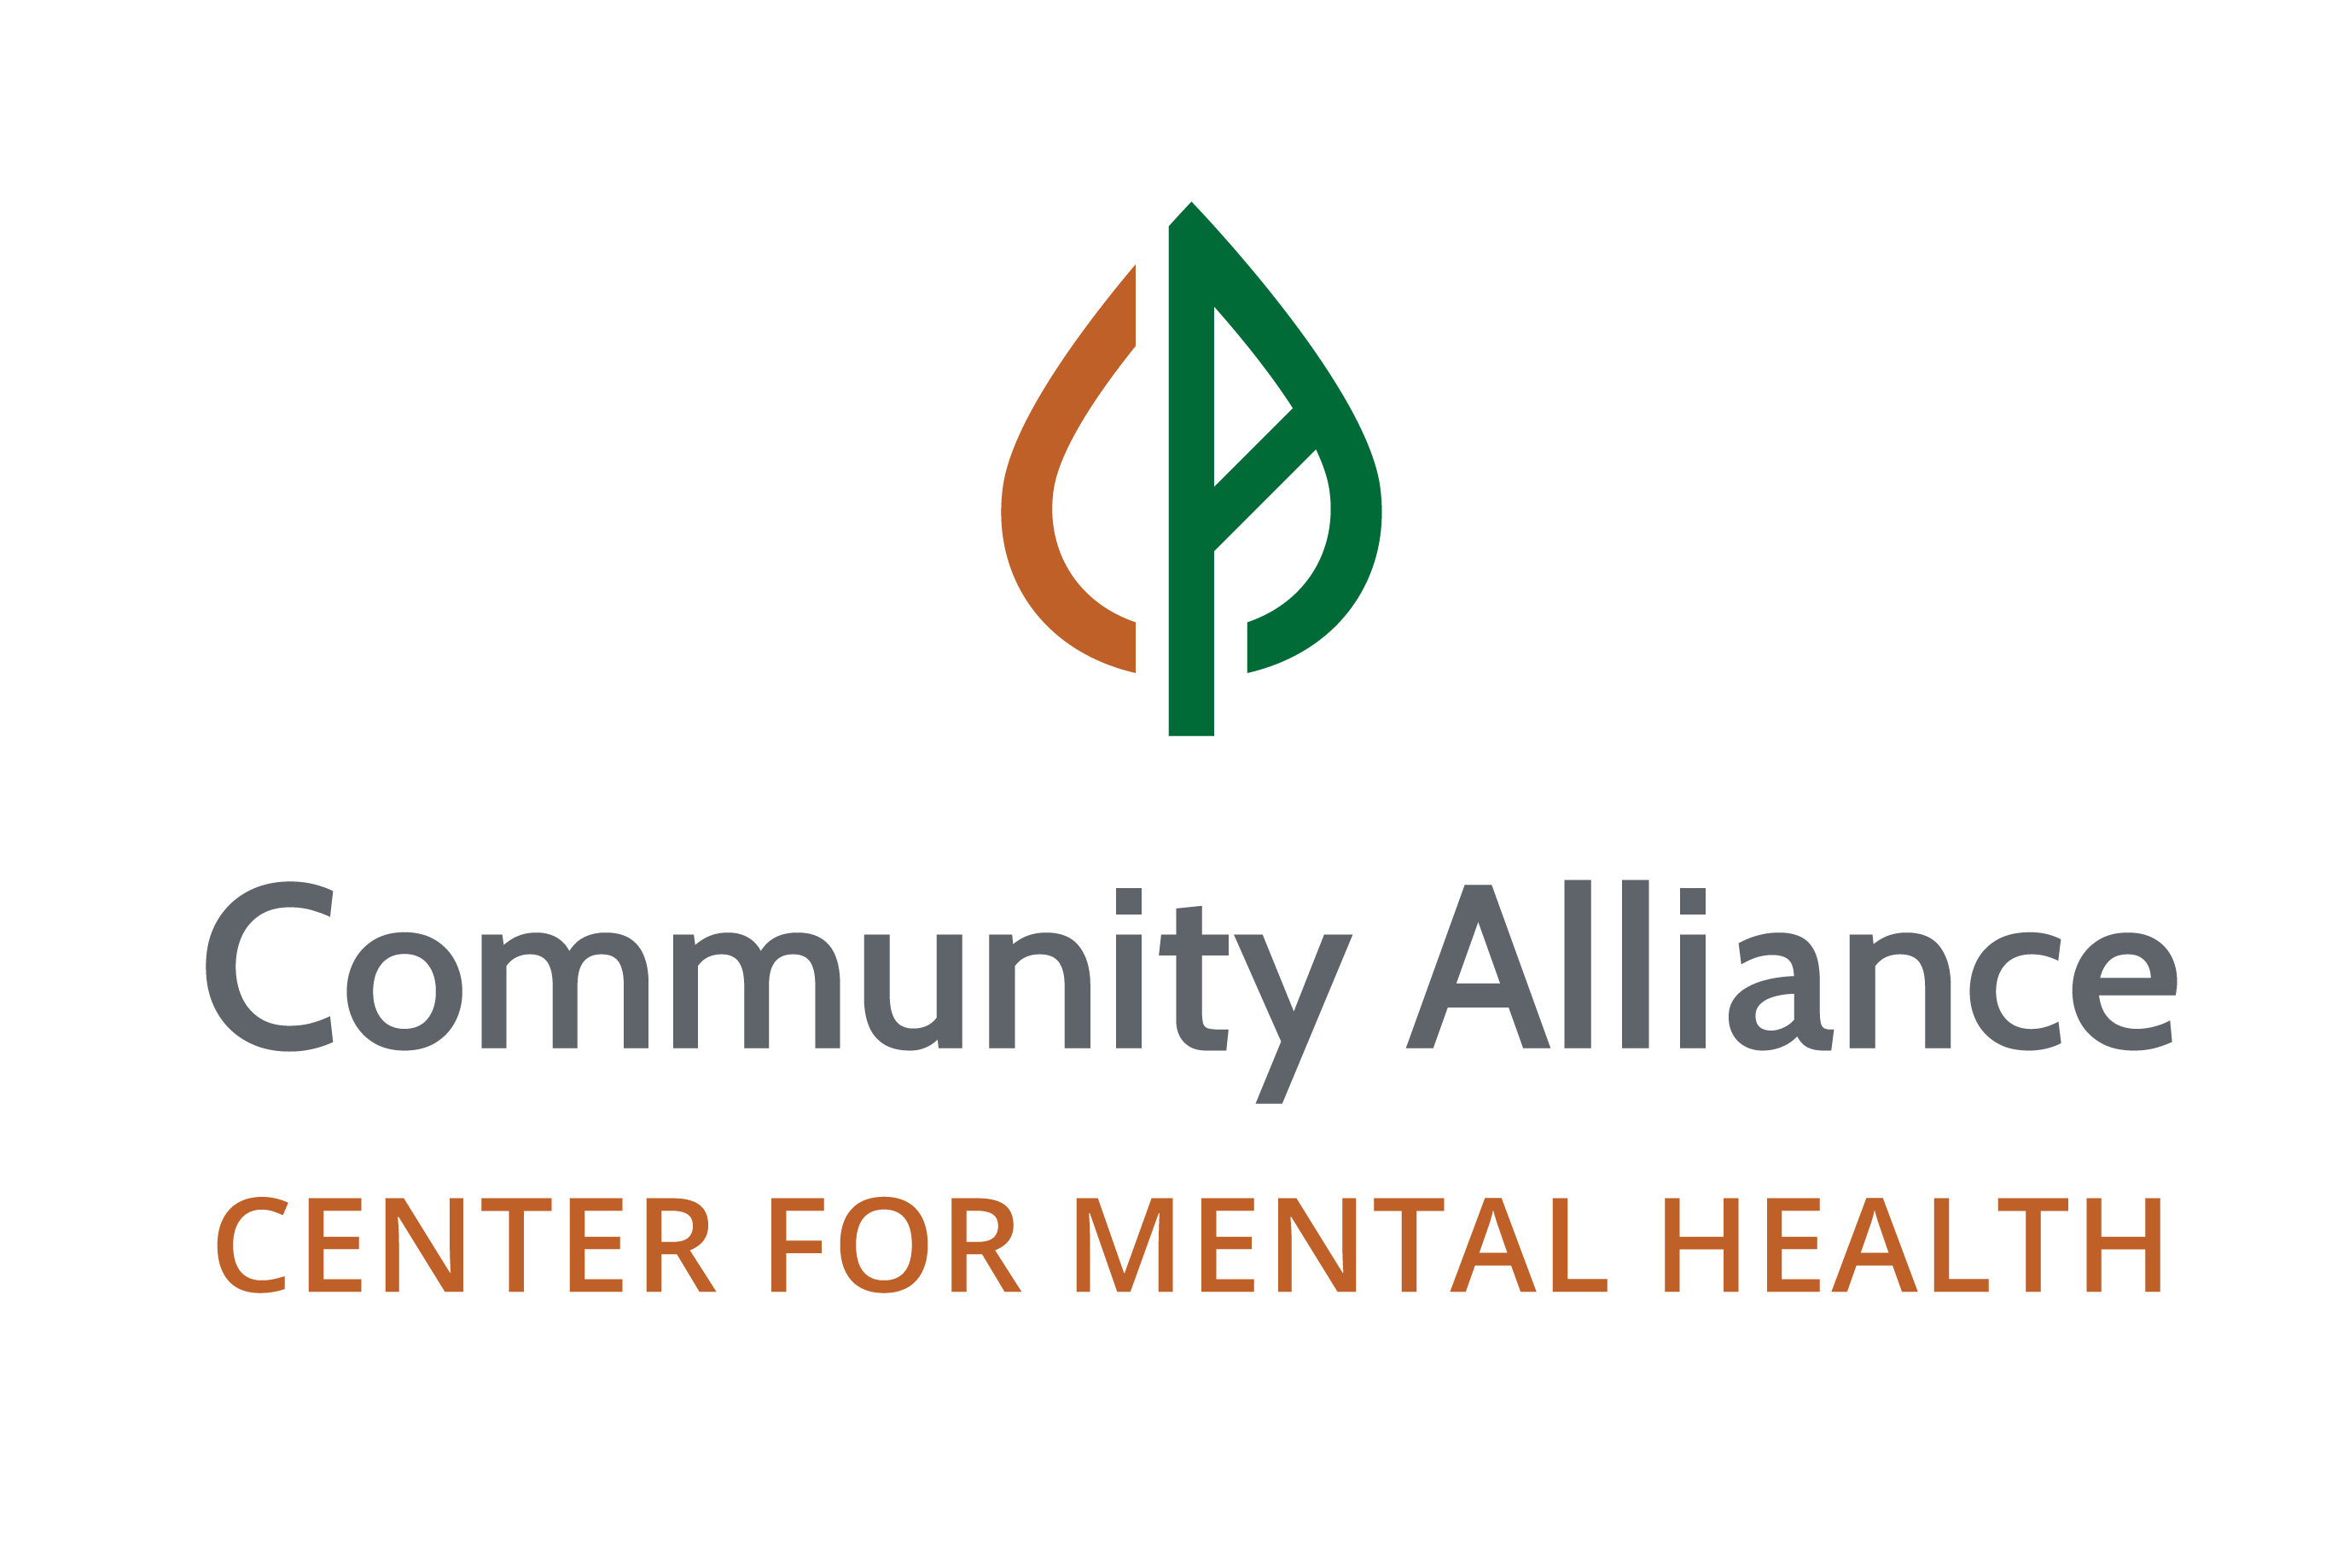 Community Alliance - Center for Mental Health